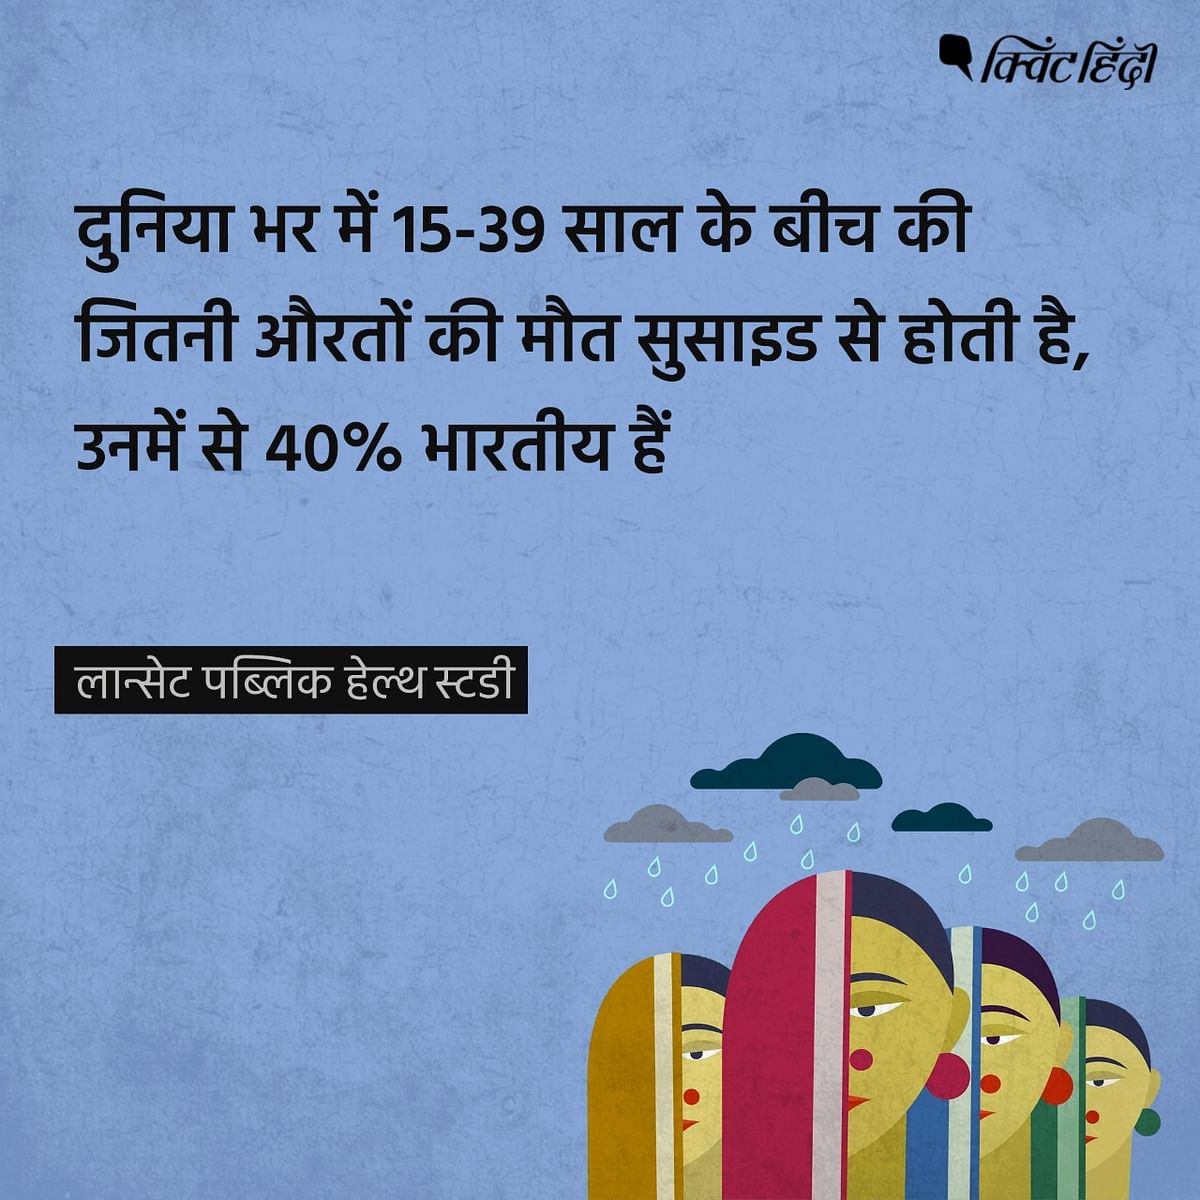 दुनियाभर में 15-39 साल के बीच की जितनी औरतों की मौत सुसाइड से होती है, उनमें से 40% भारतीय हैं